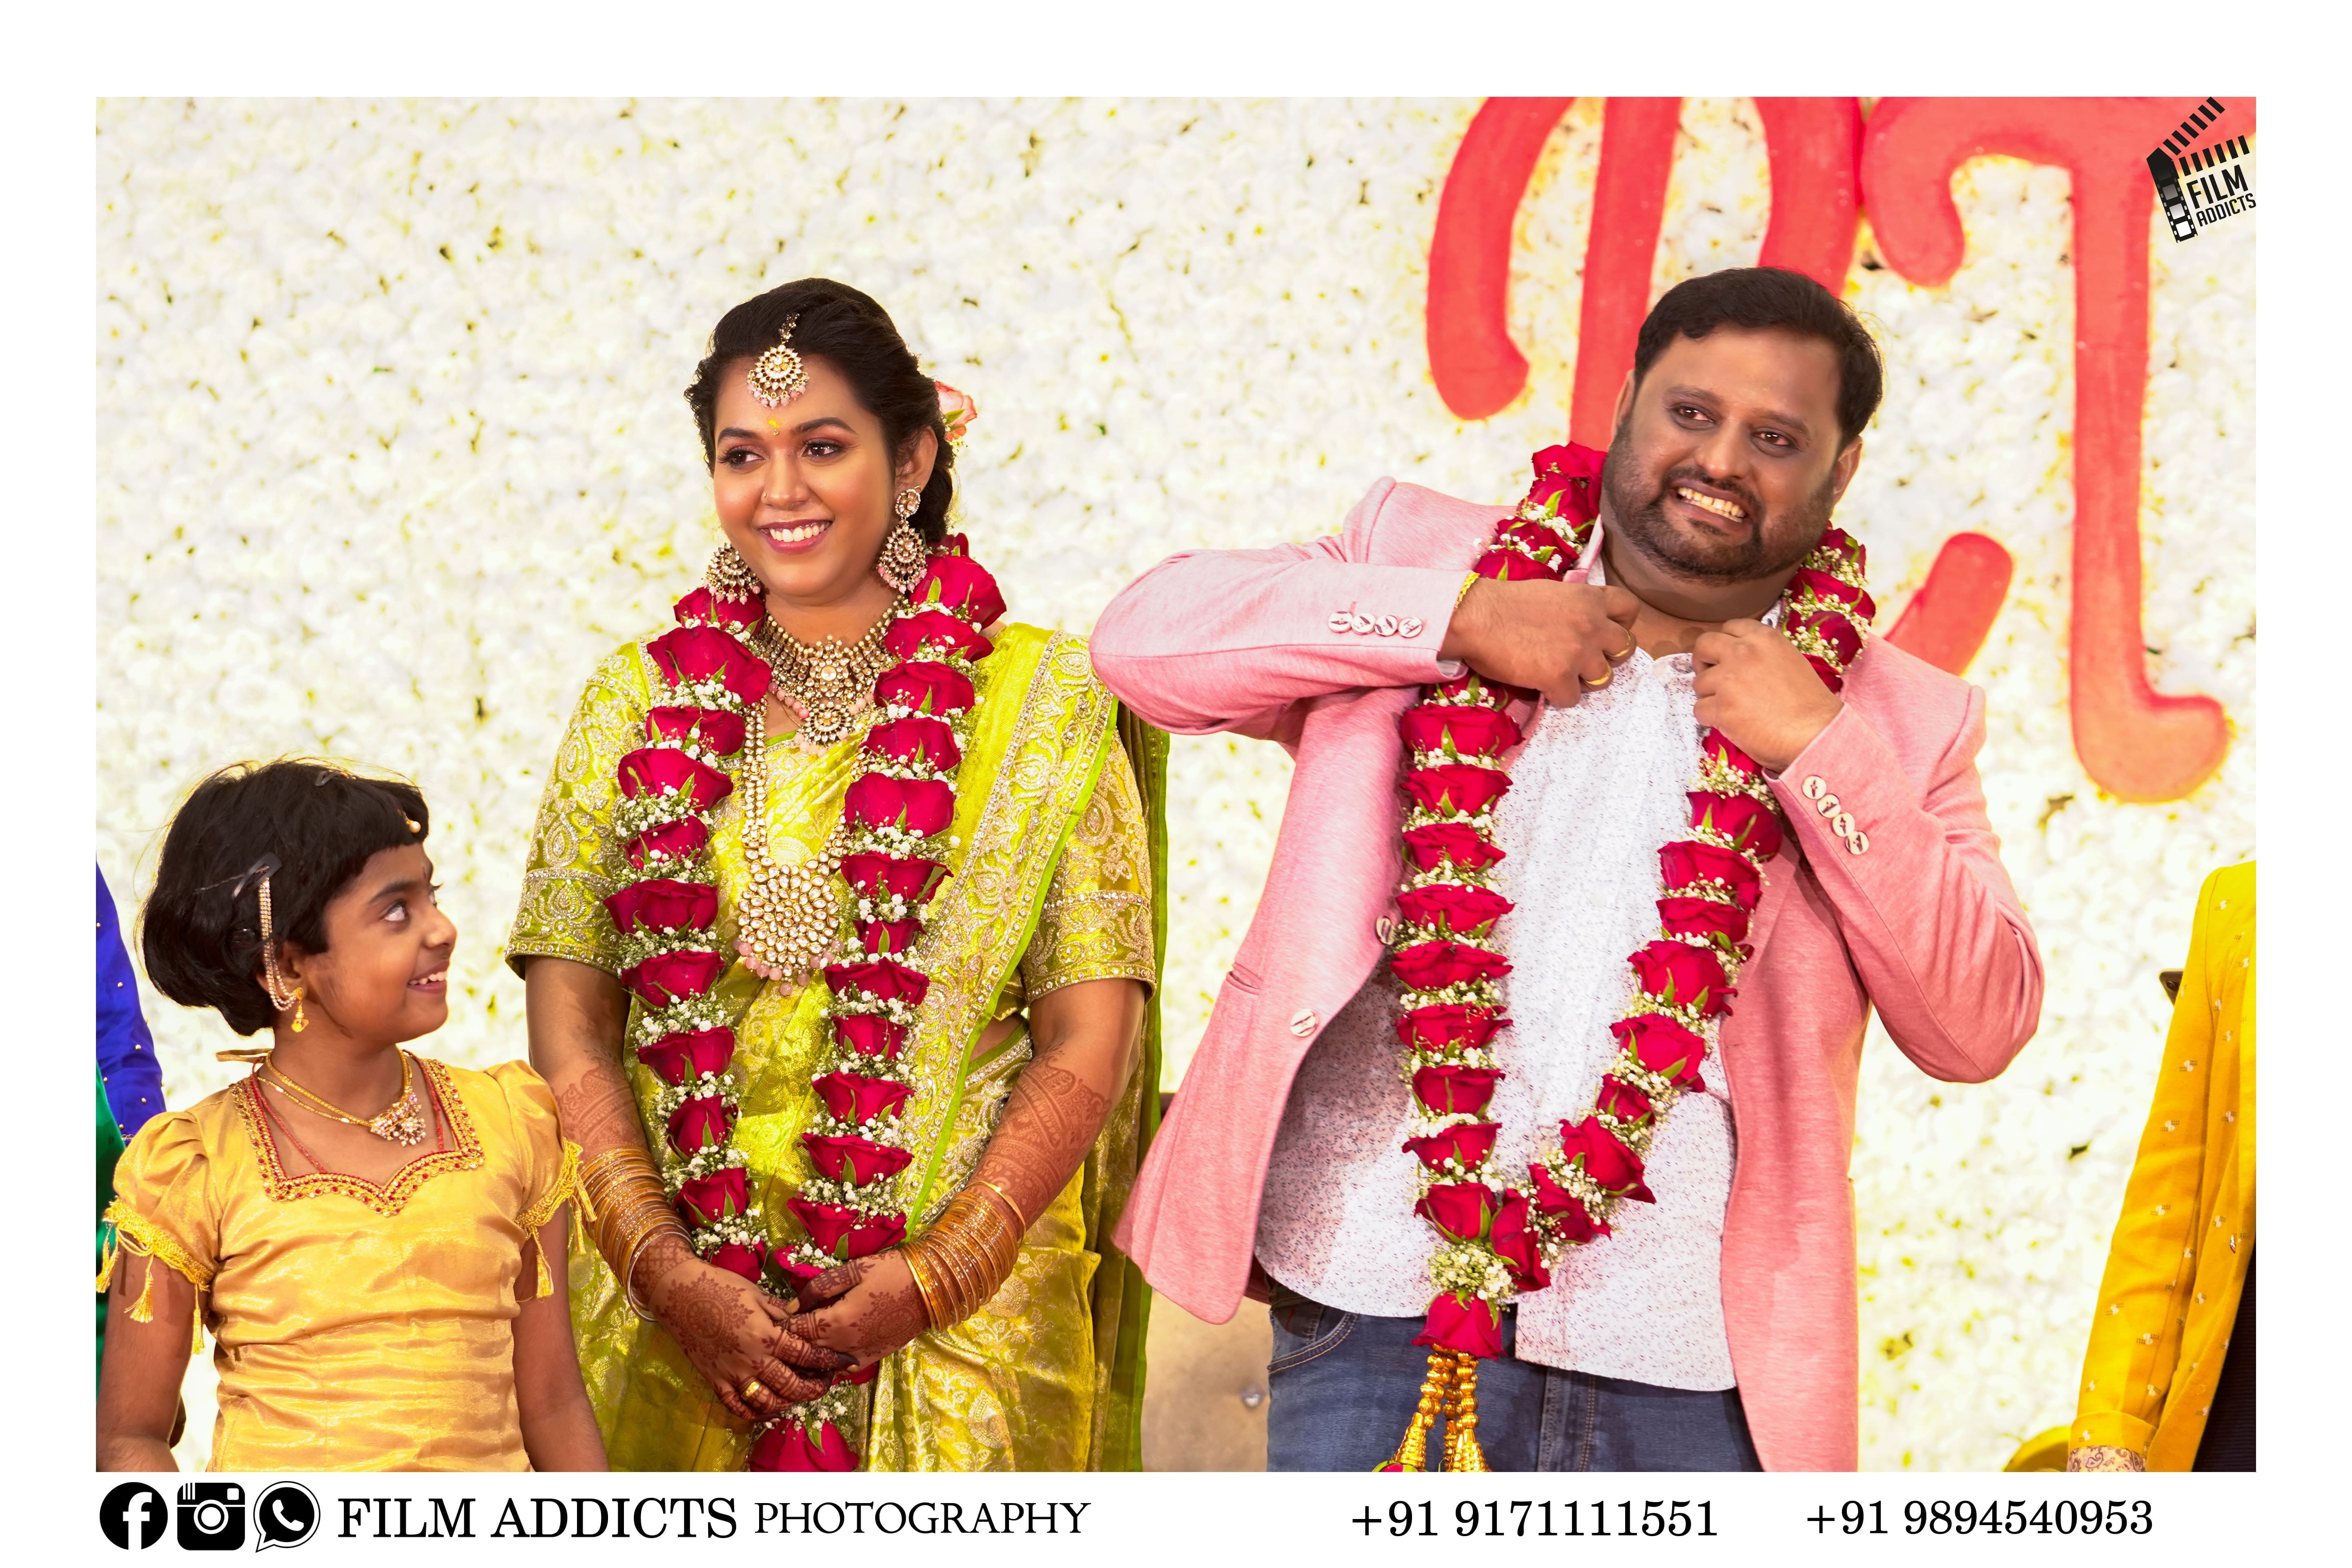 Thanjavur Wedding Planners, Best Wedding Planners in Thanjavur,Wedding Planners in Thanjavur